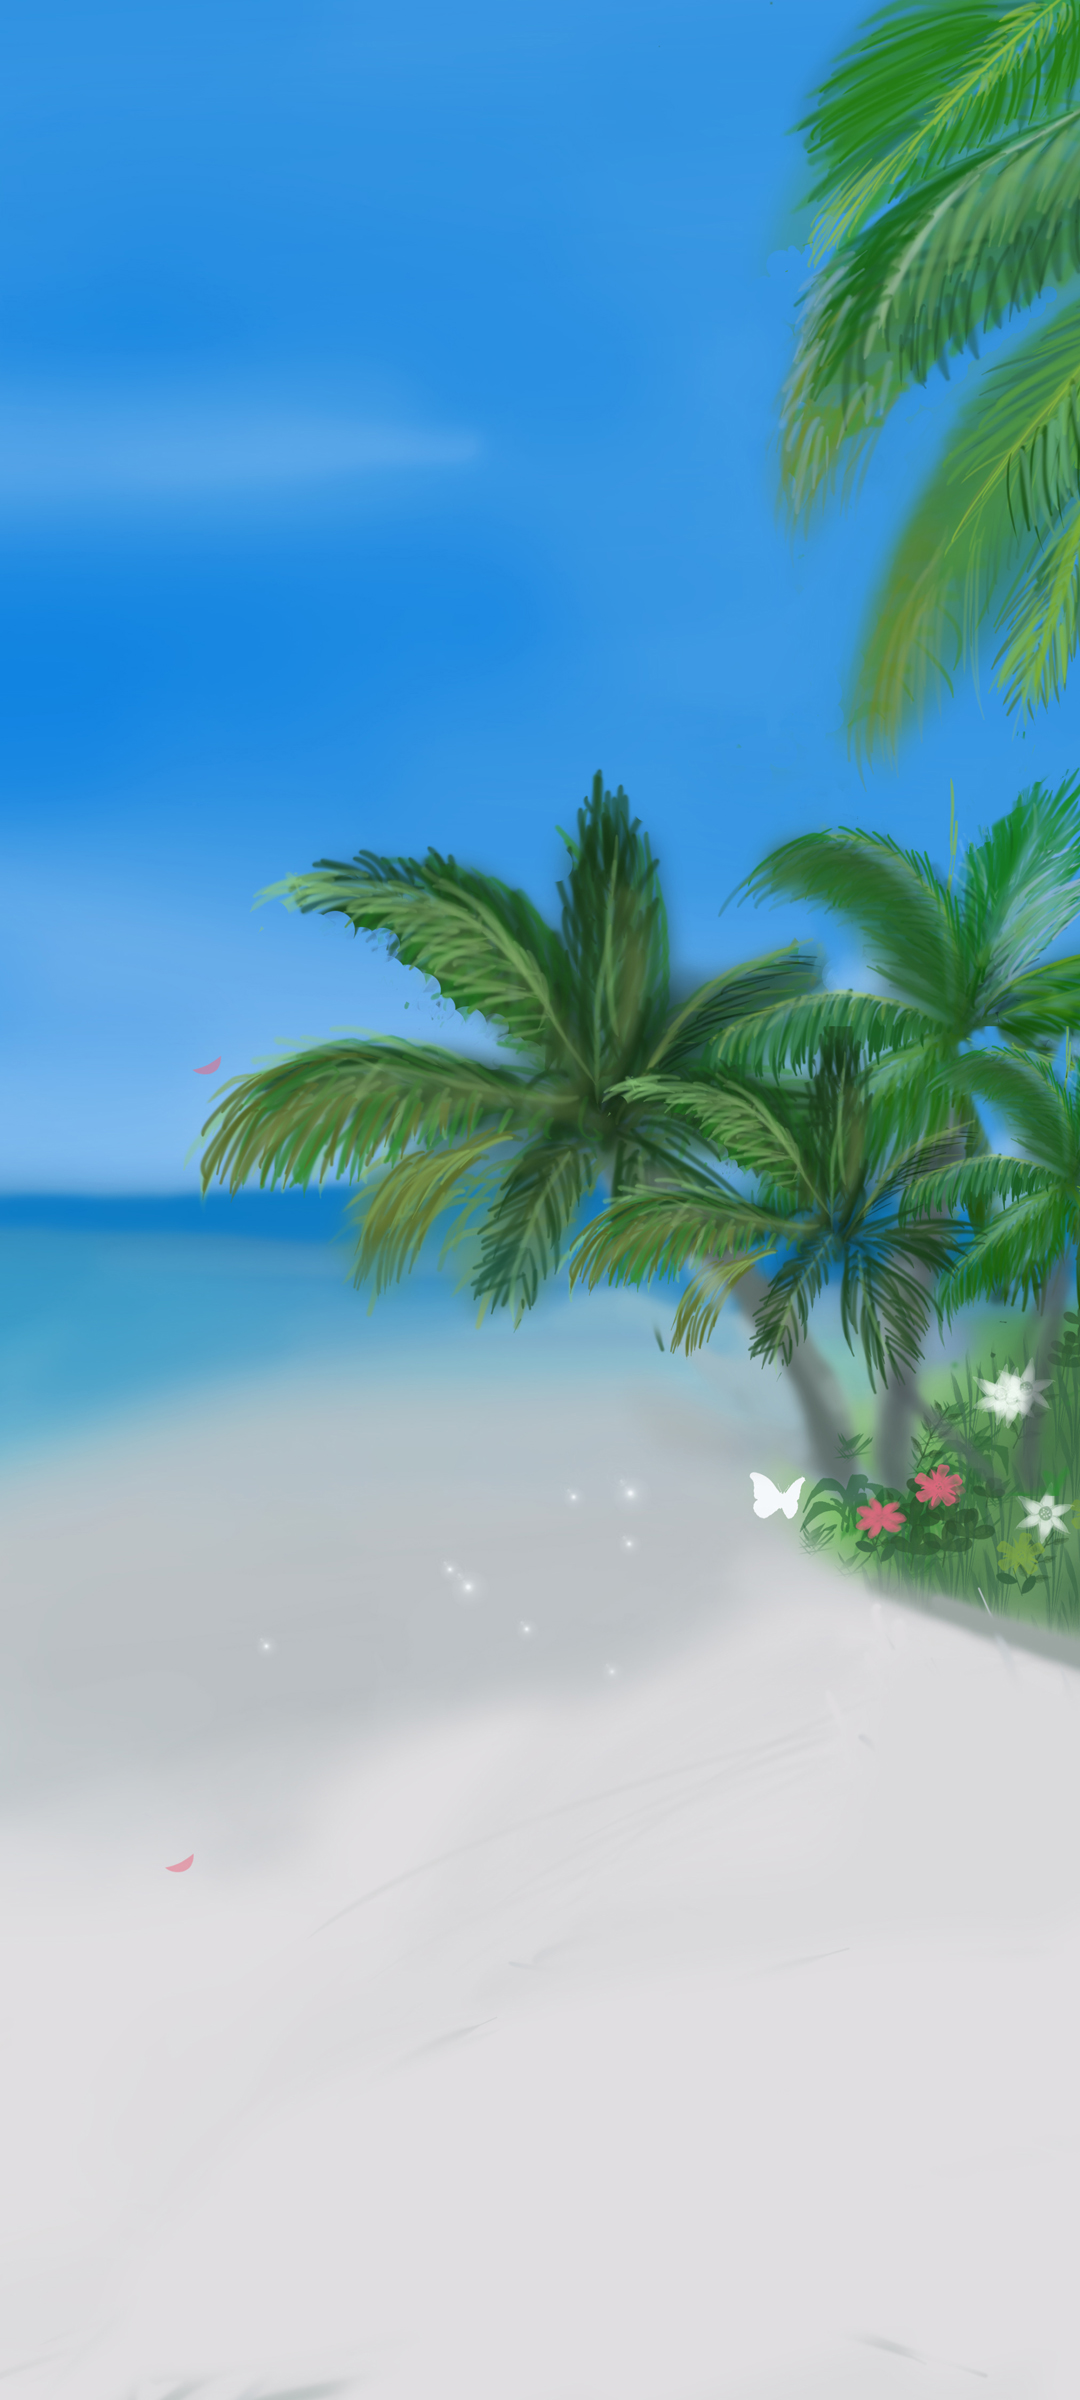 原创 海边风景 沙滩 树 高清 手机壁纸